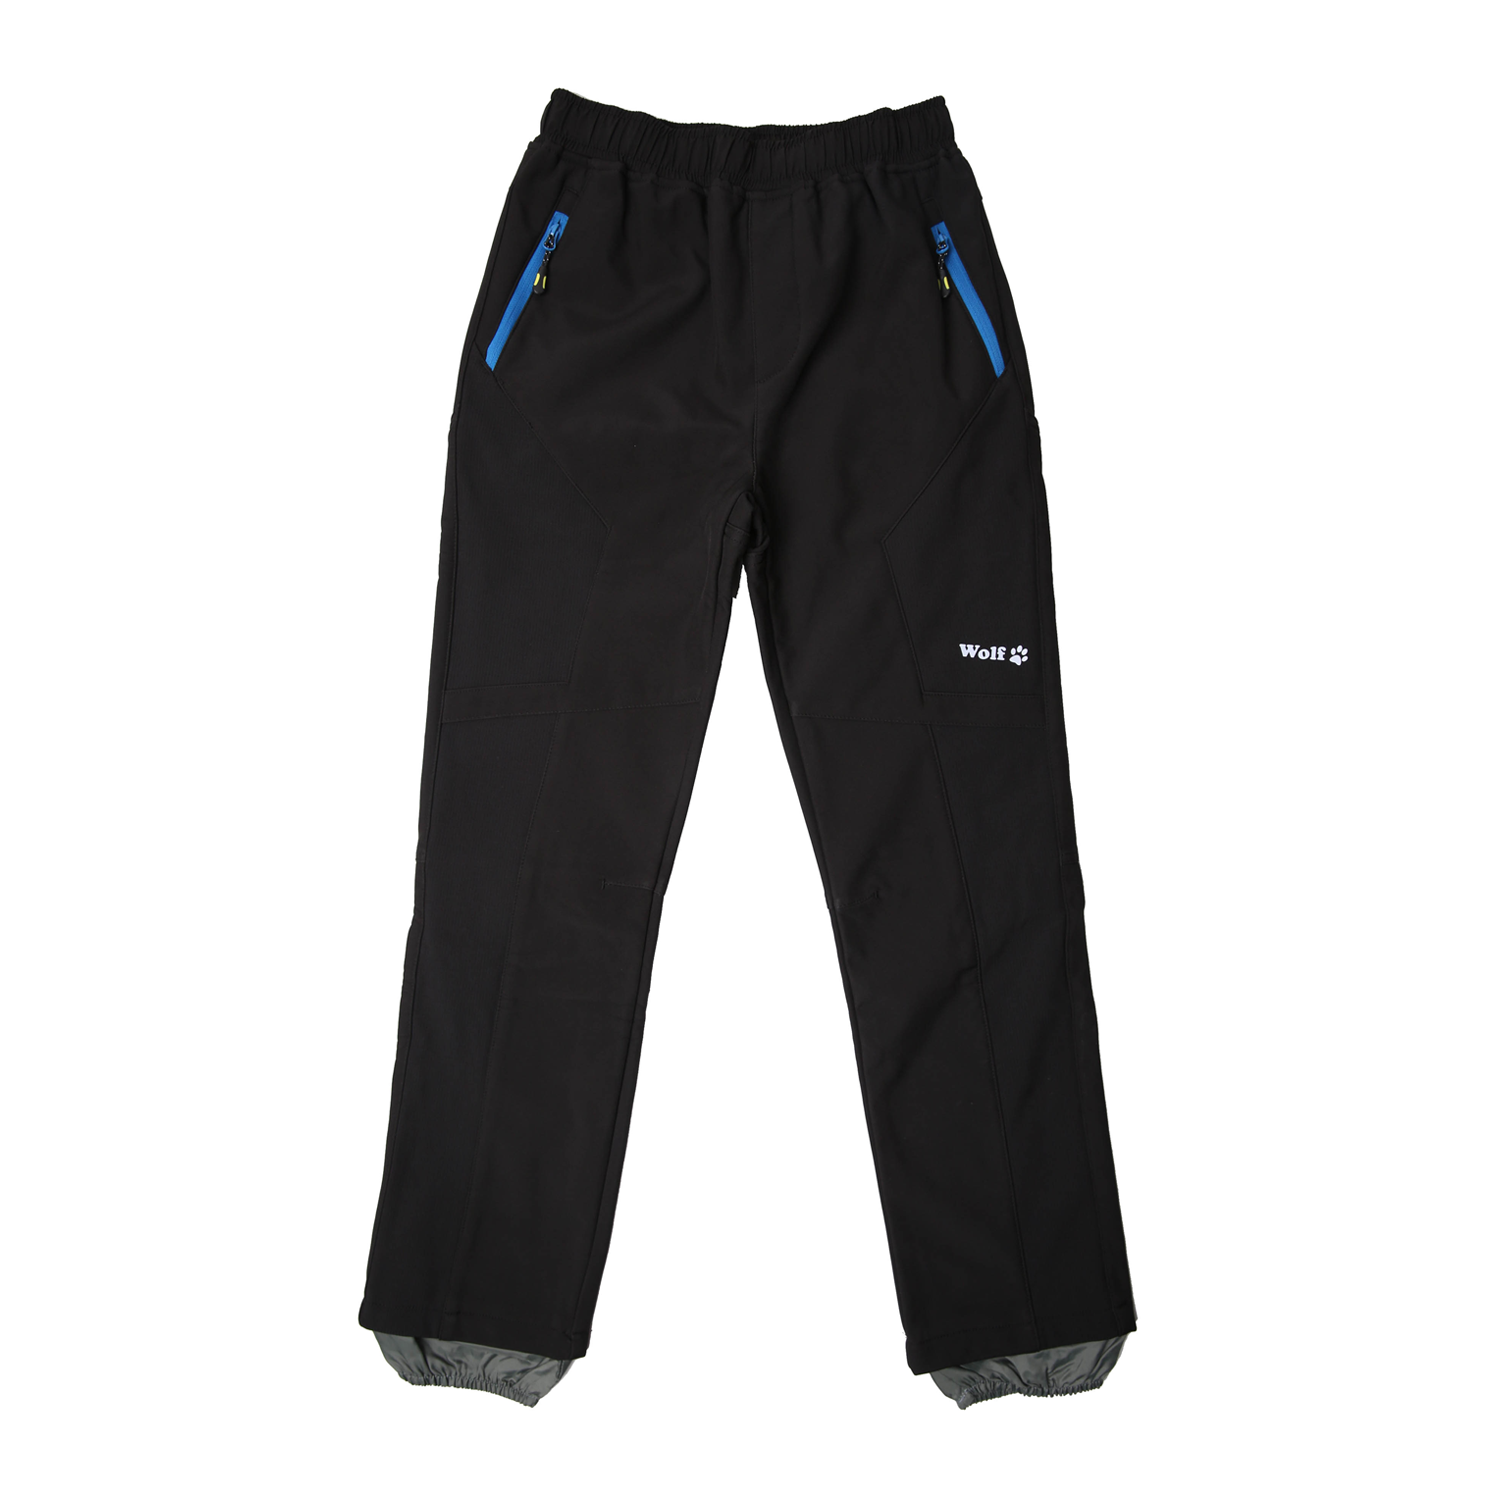 Chlapecké softshellové kalhoty, zateplené - Wolf B2394, černá Barva: Černá, Velikost: 116